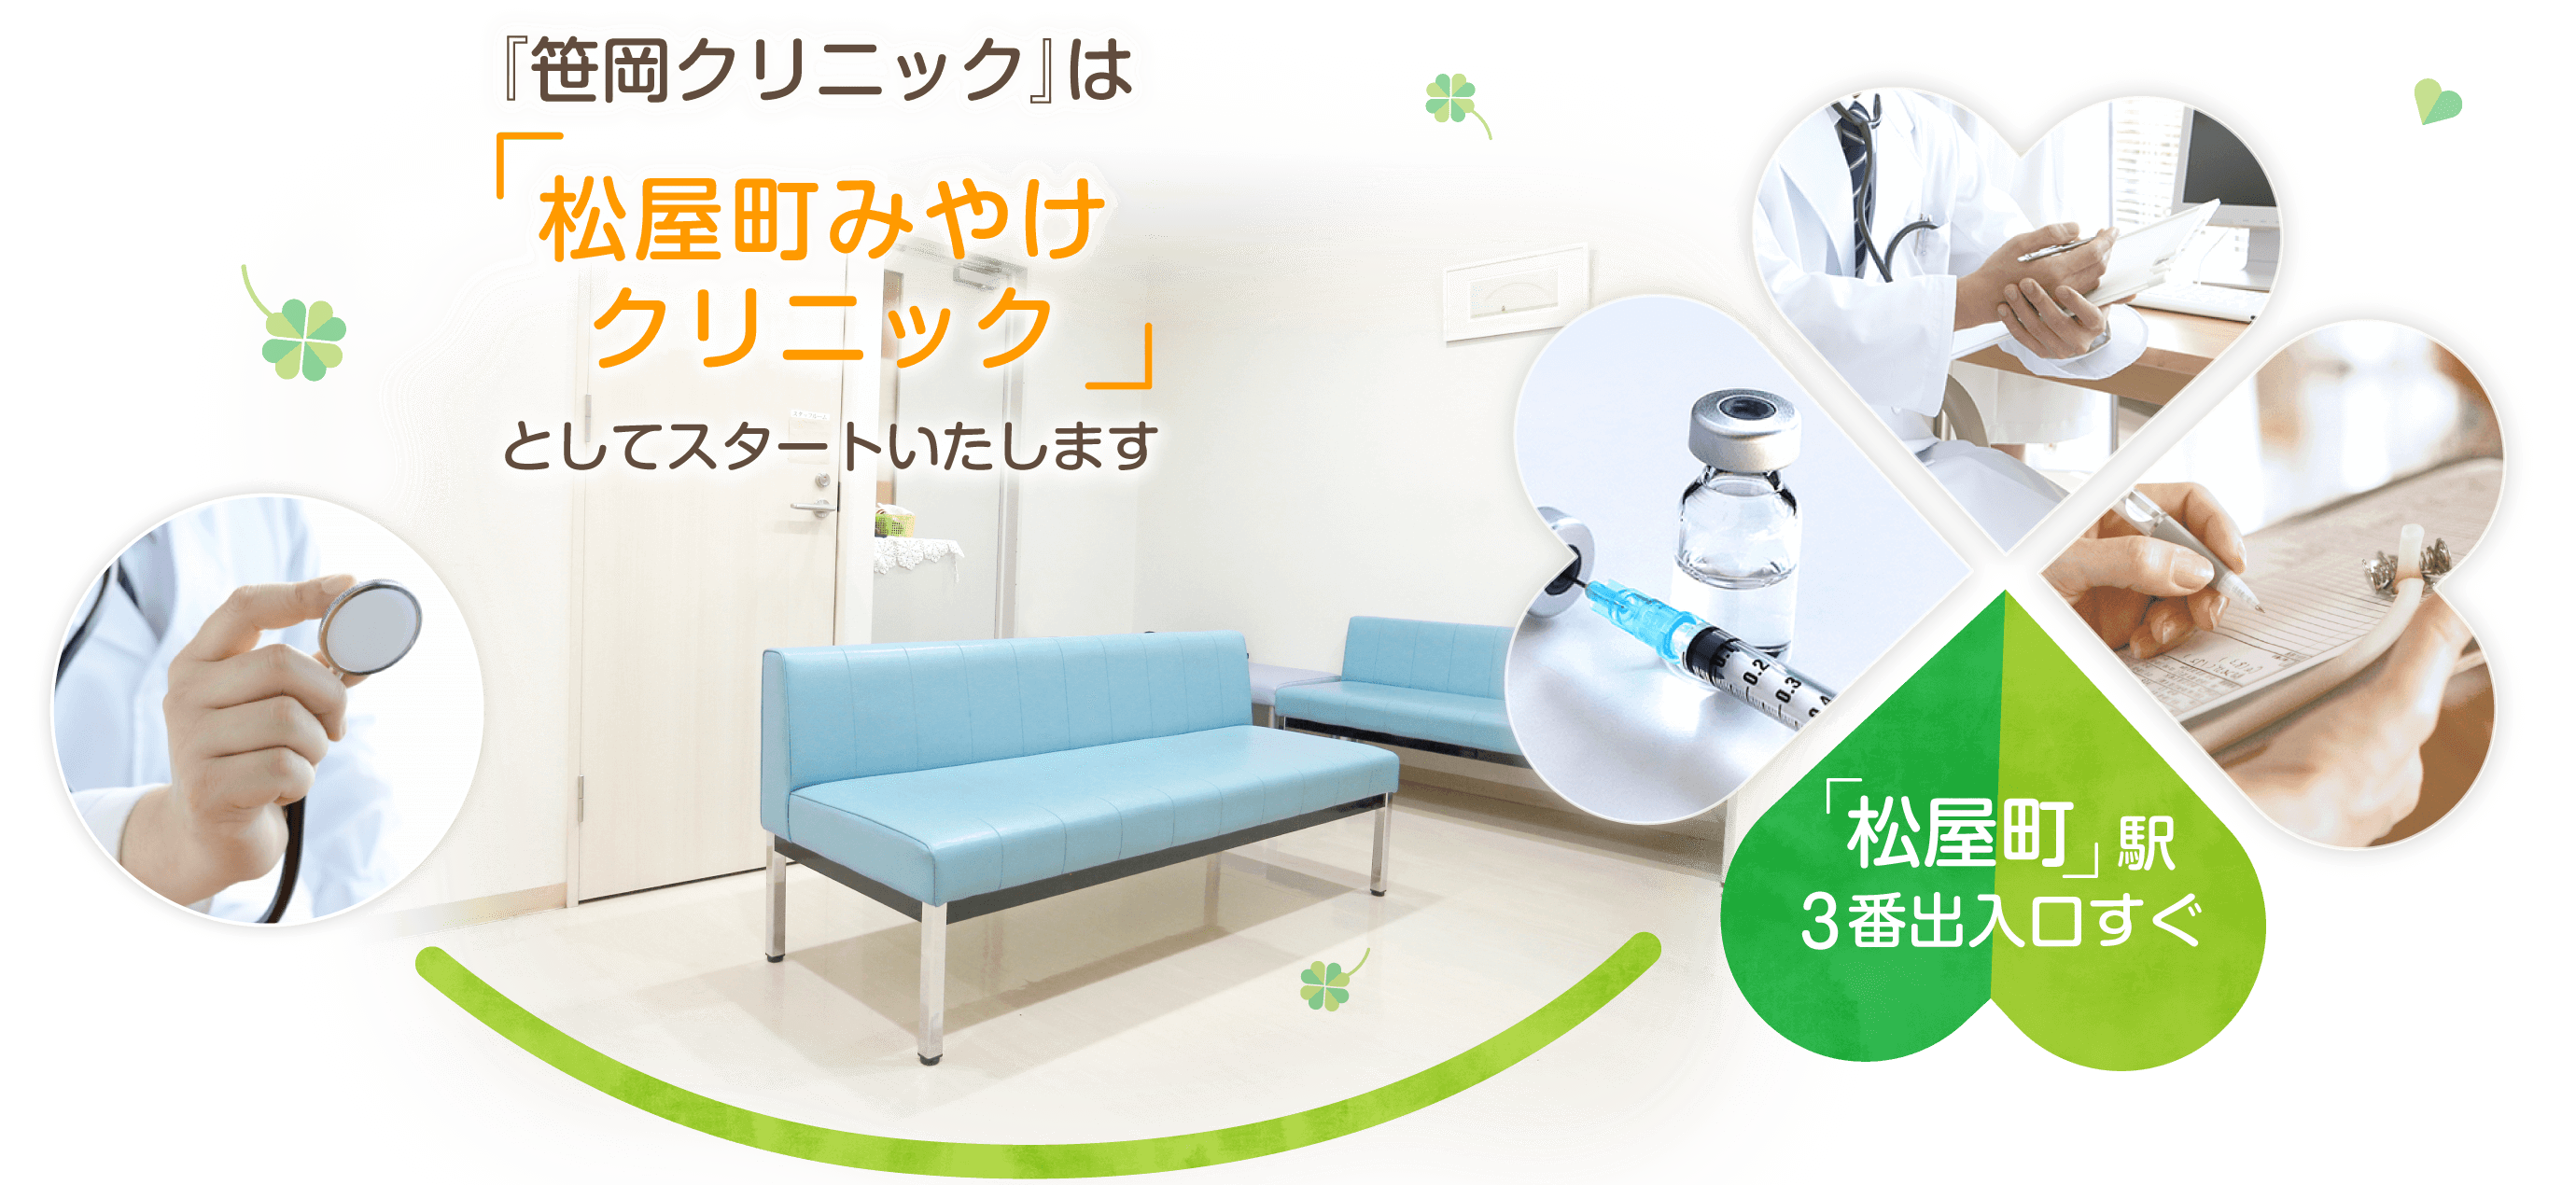 『笹岡クリニック』は、大阪市中央区松屋町の内科・外科・在宅医療を中心とした『松屋町みやけクリニック』としてスタートいたします